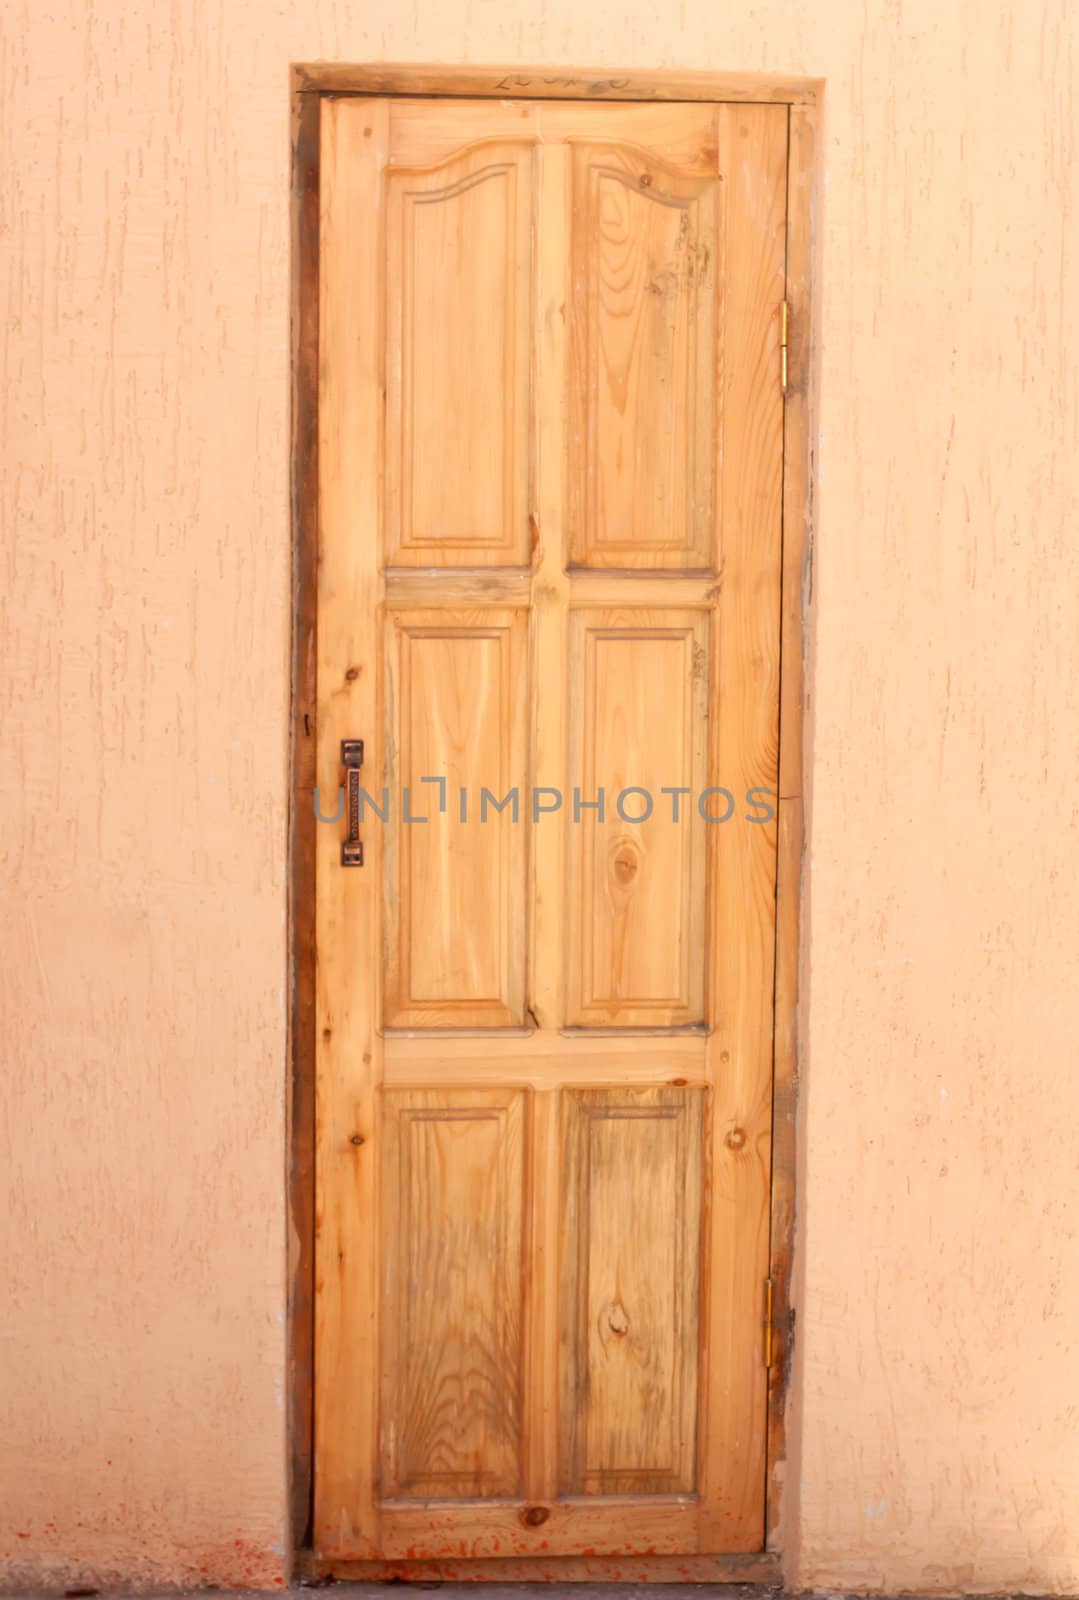 Old wooden door, background  by schankz